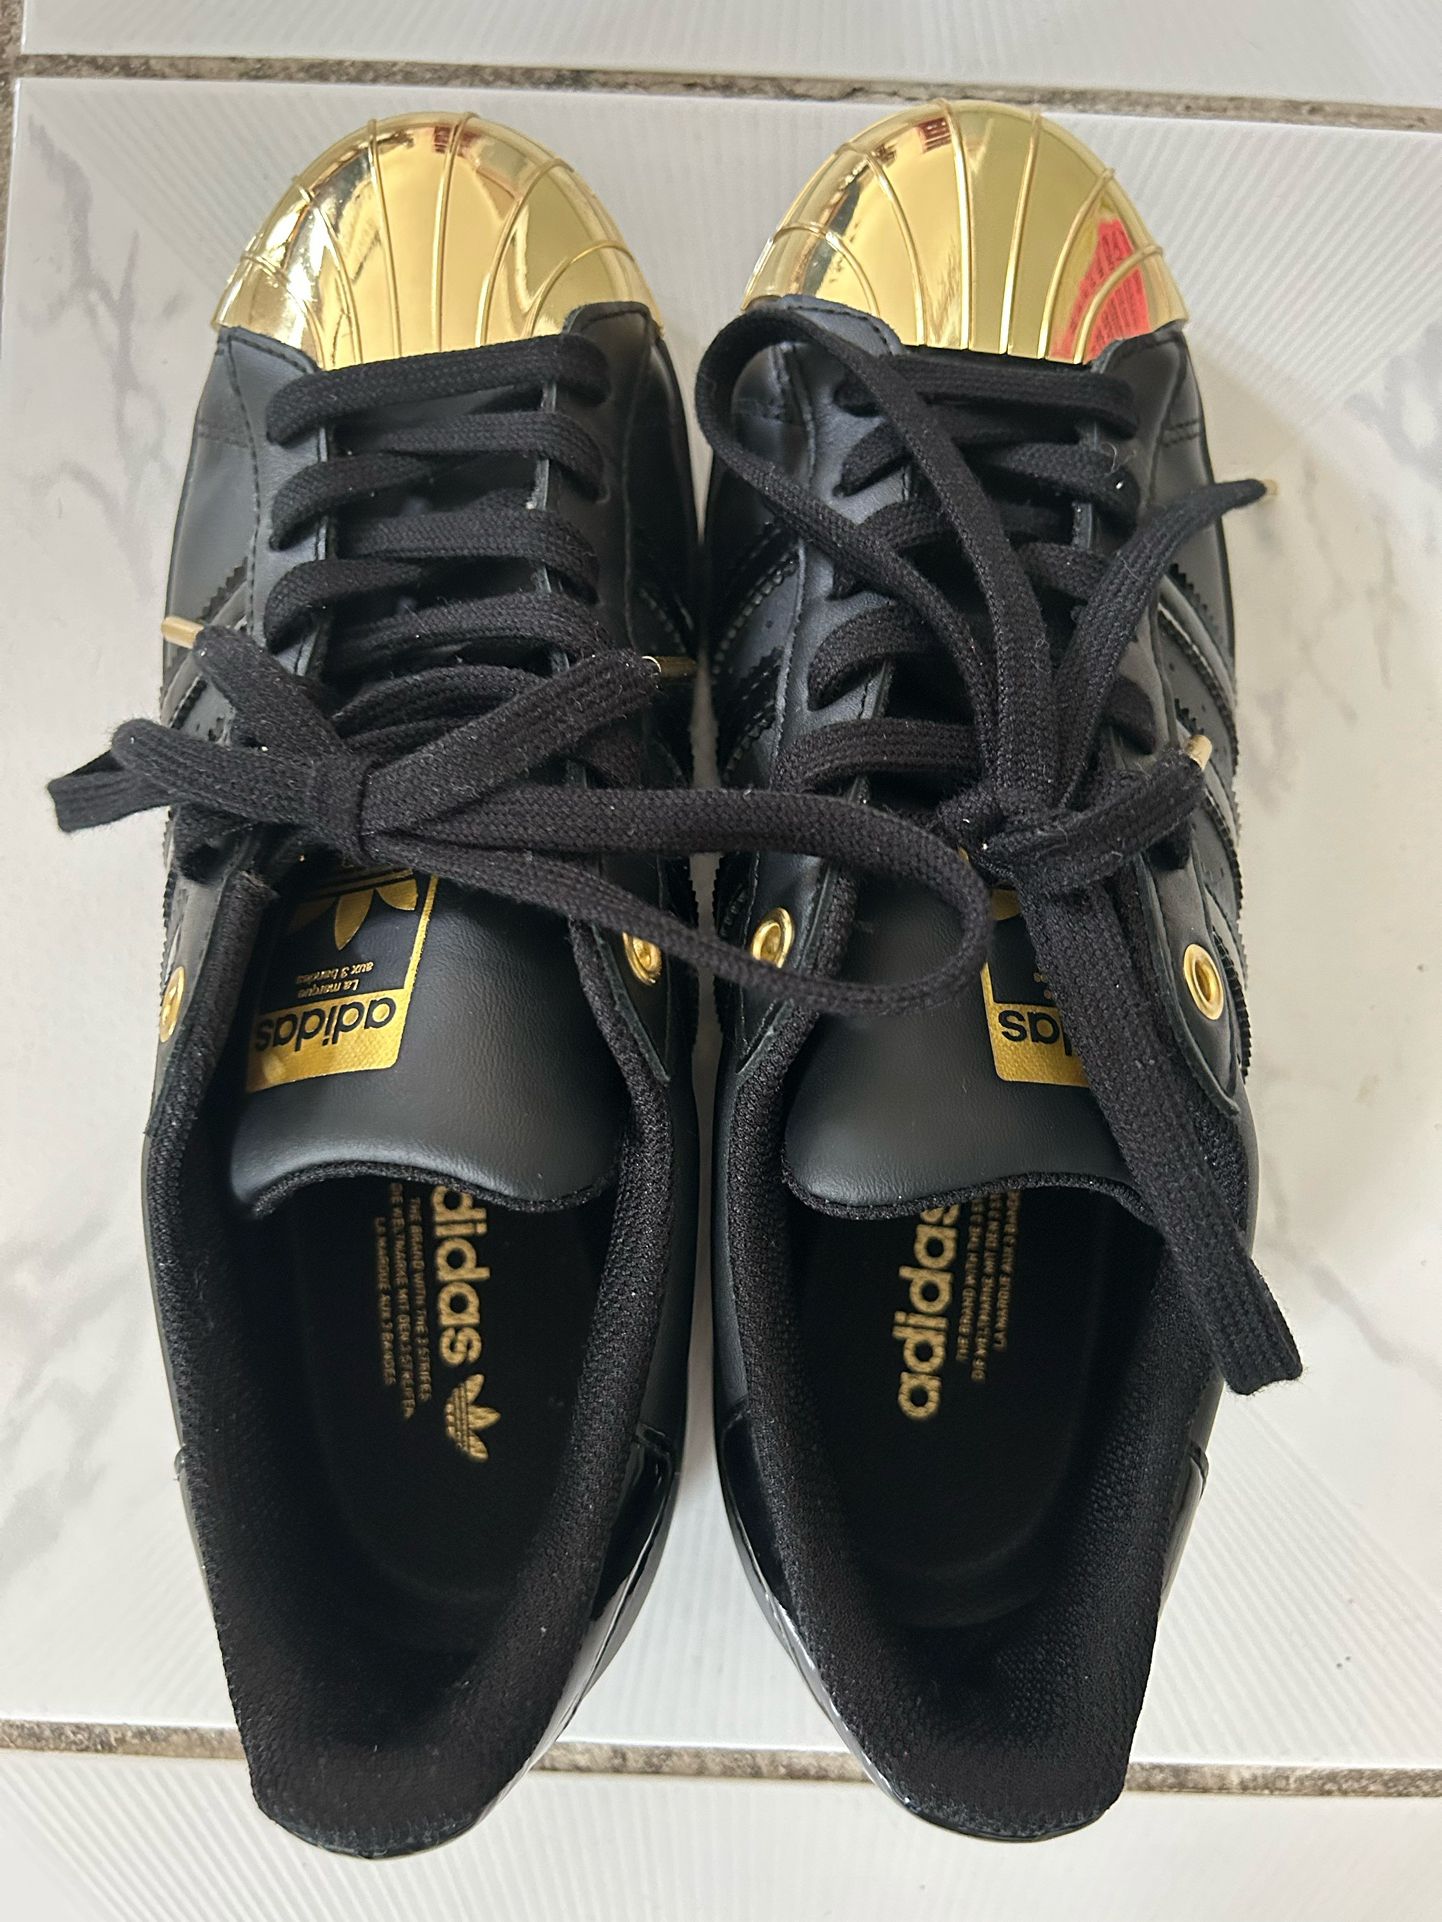 Men’s Adidas Superstar Sneakers With Metallic Golden Toes